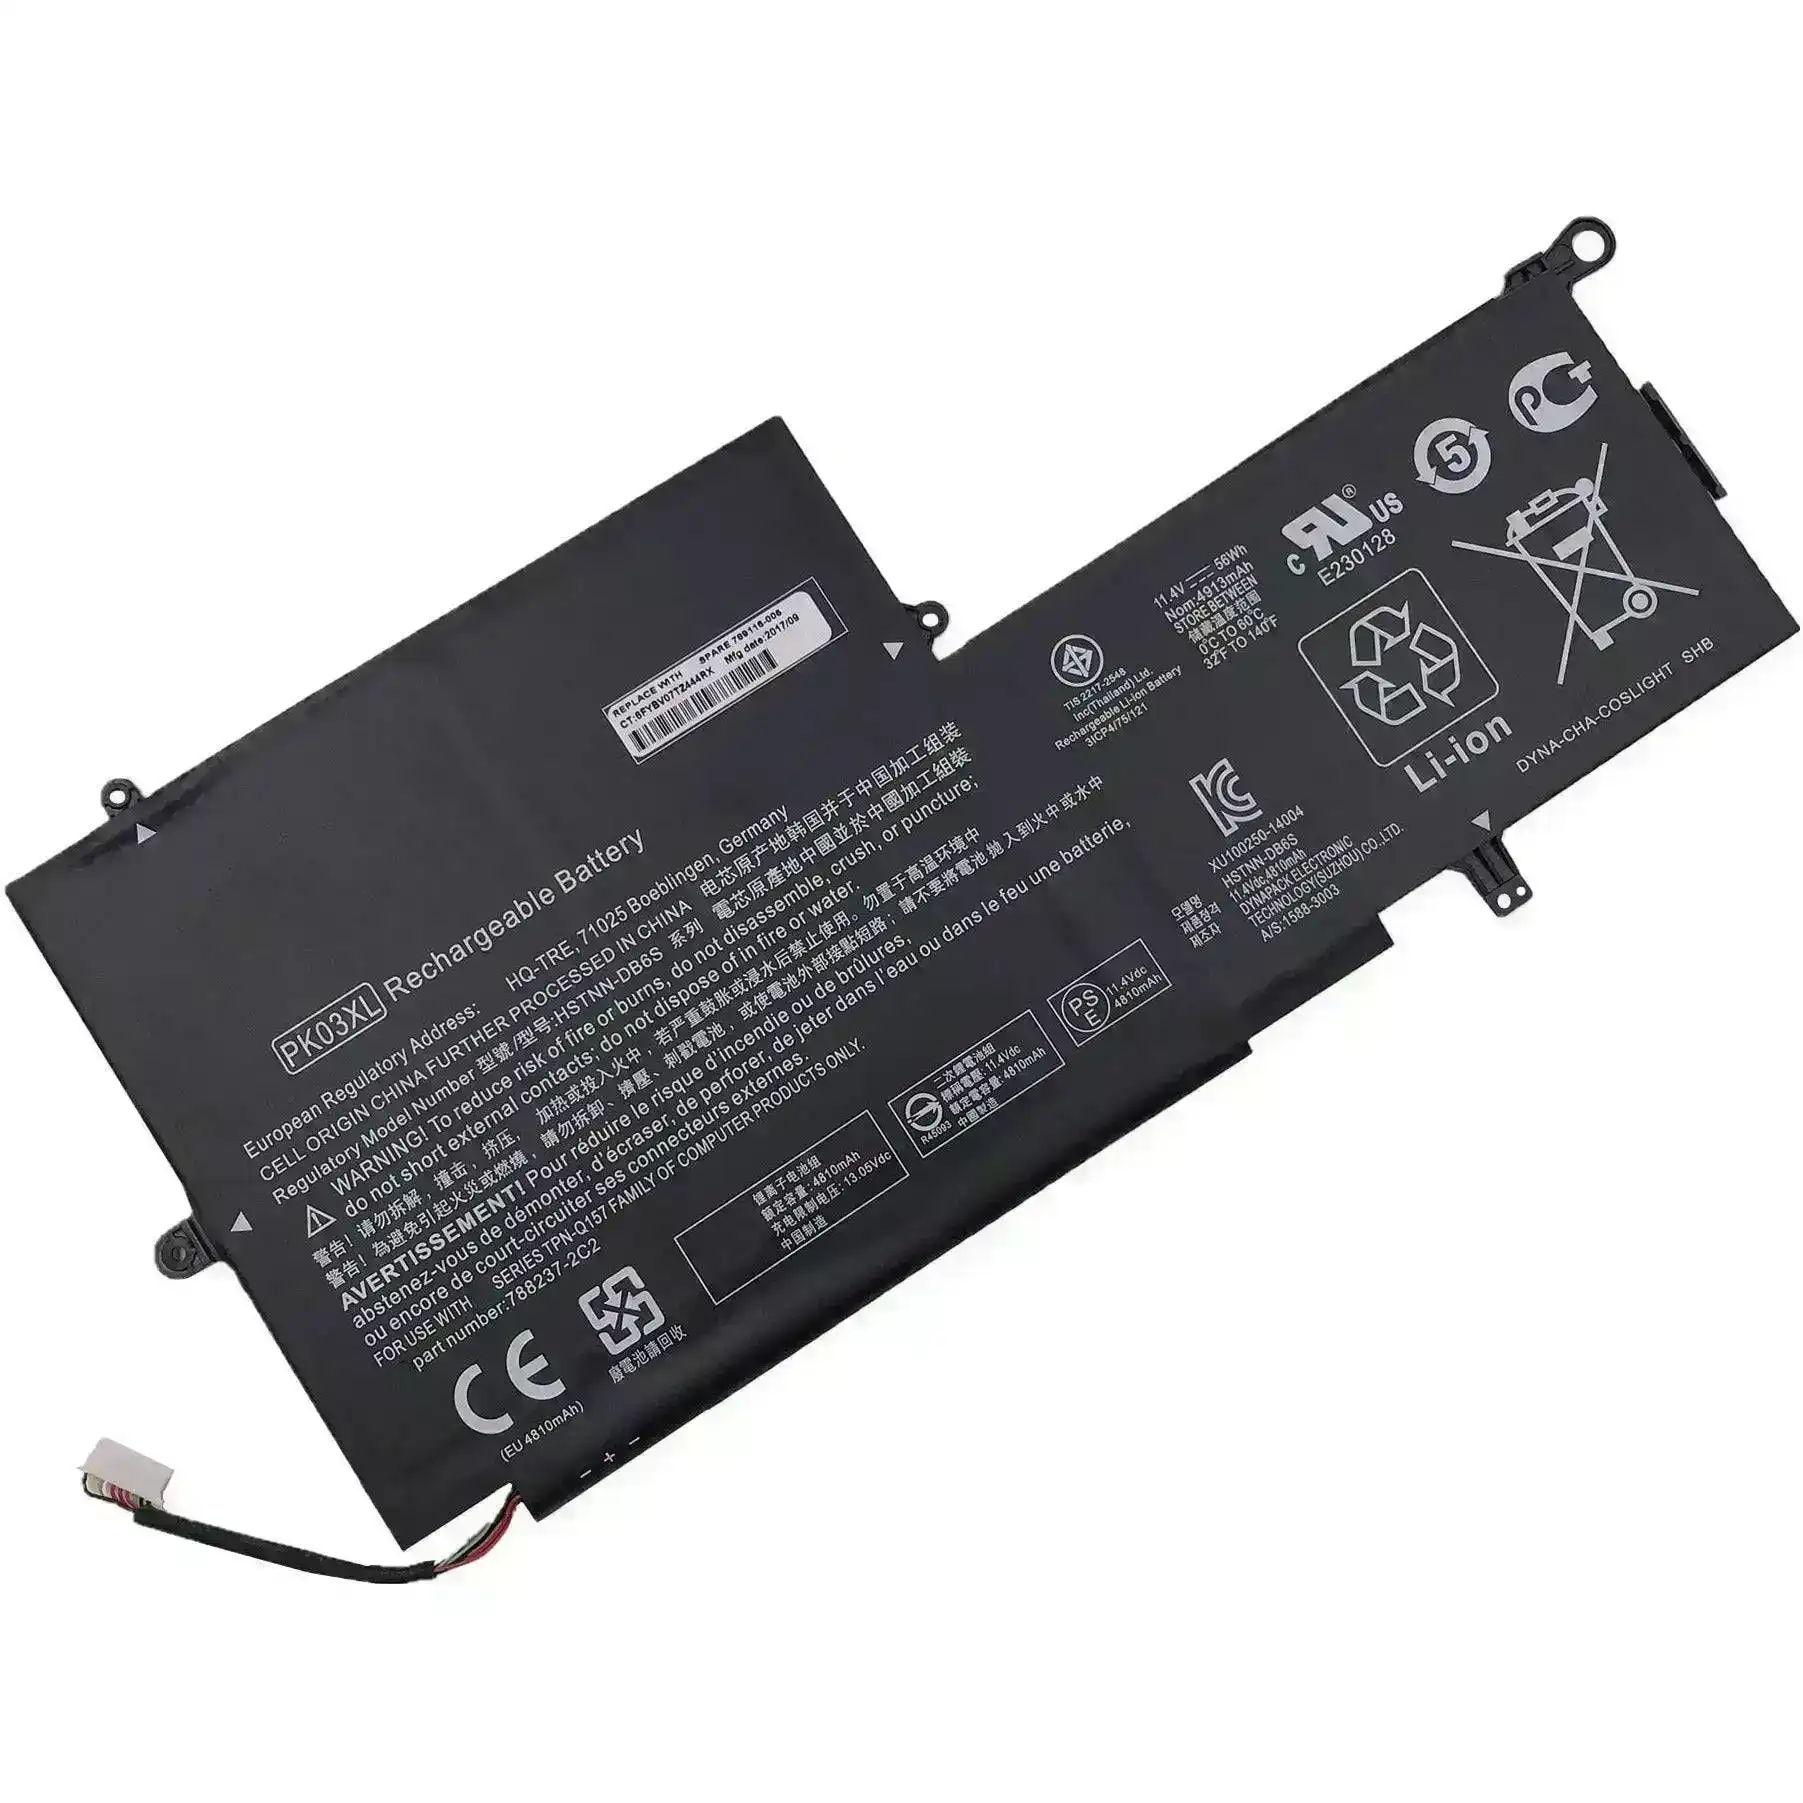 Brand NEW PK03XL Battery For HP Spectre 13 Series G1 G2 HSTNN-DB6S 6789116-005